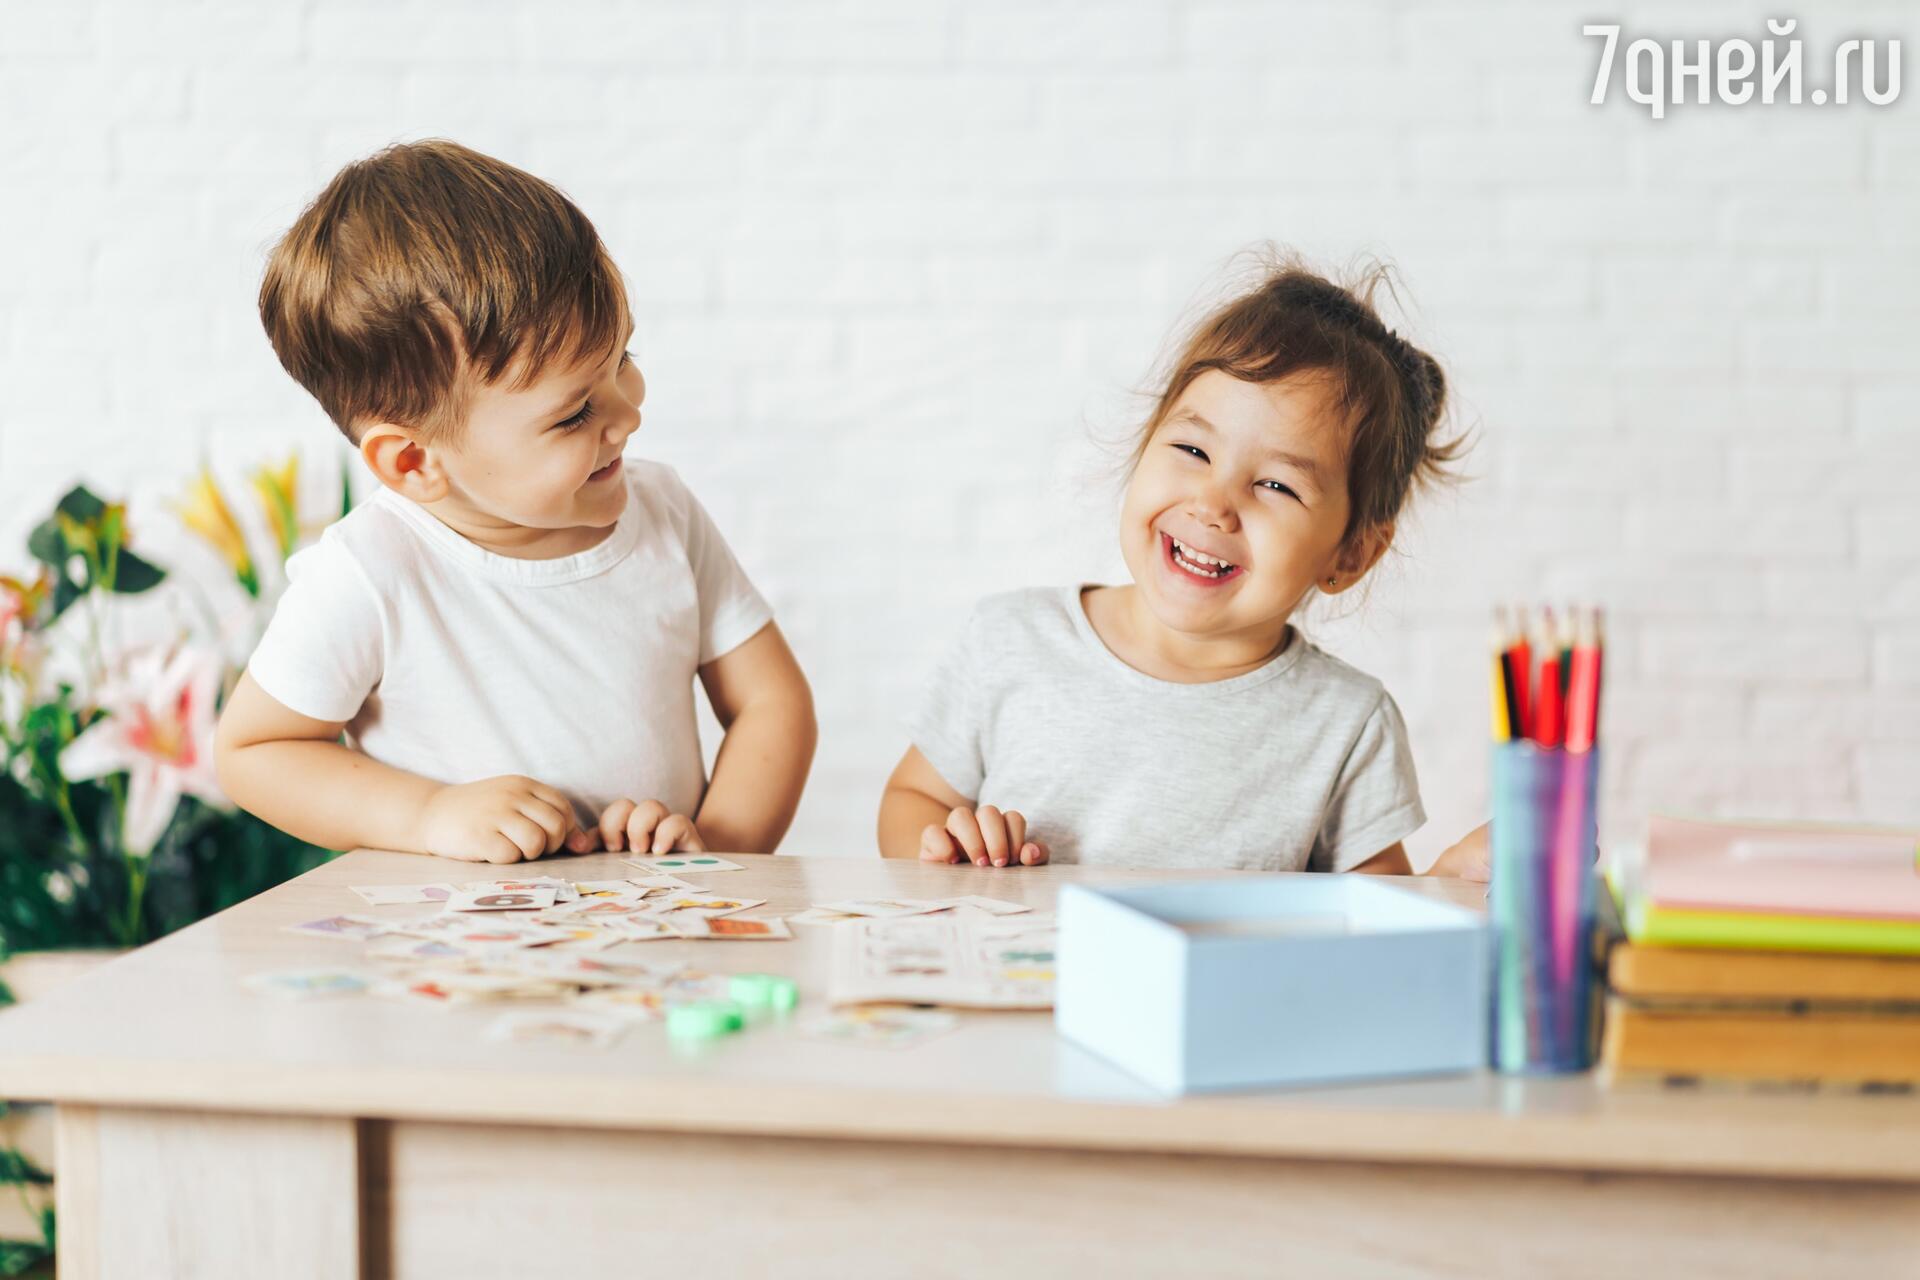 Развивающие игры и занятия для развития речи ребенка